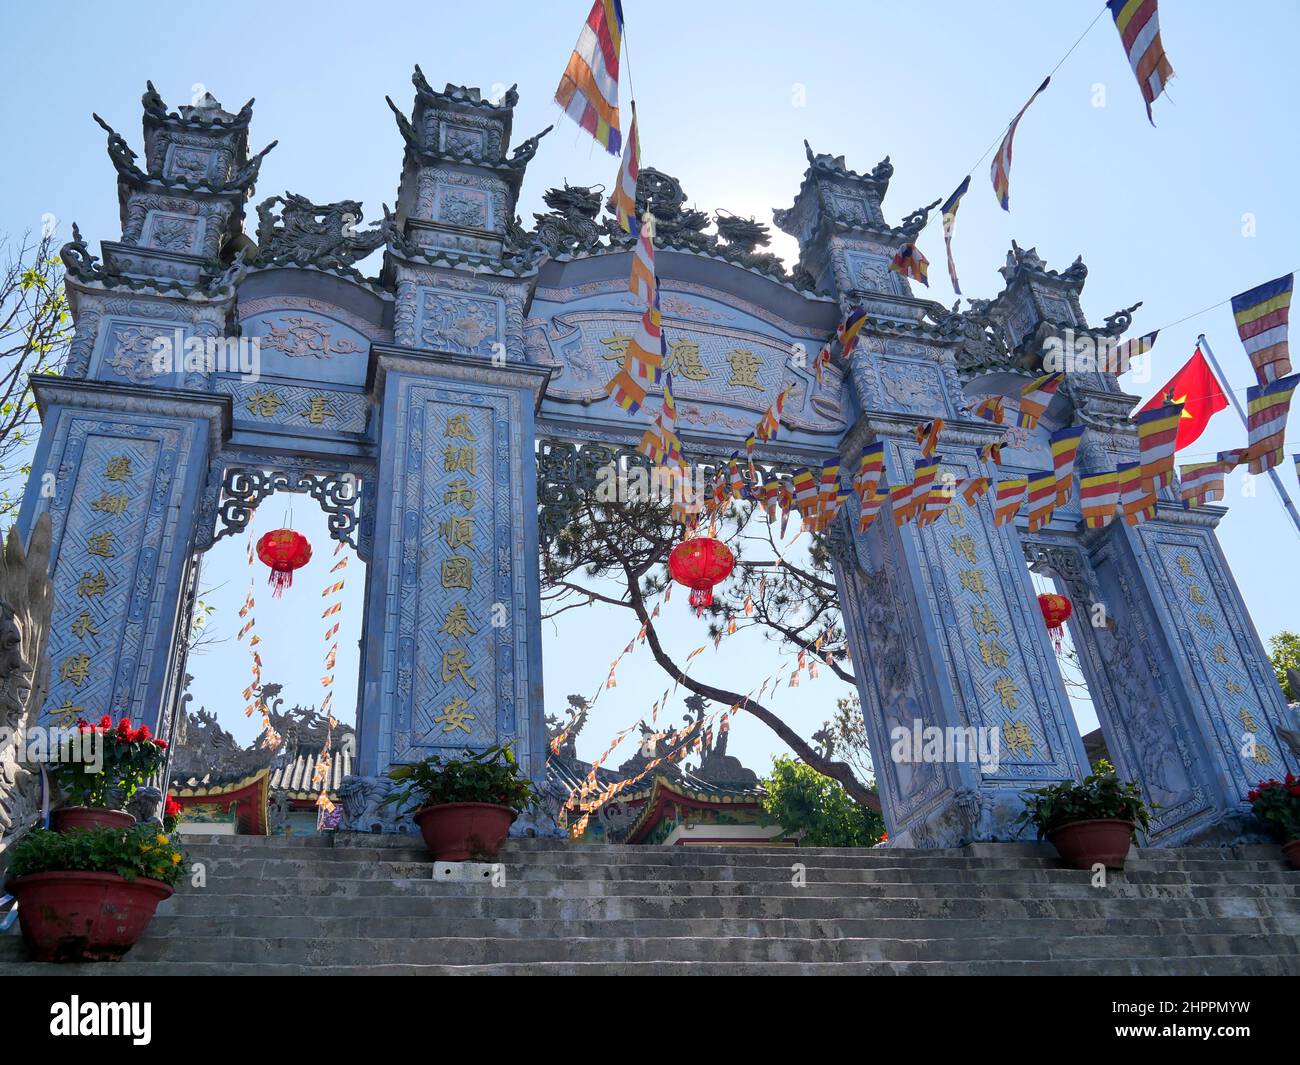 Da Nang, Vietnam - 12 avril 2021 : temple de Linh Ung, Chua Linh Ung in Ba Na Banque D'Images